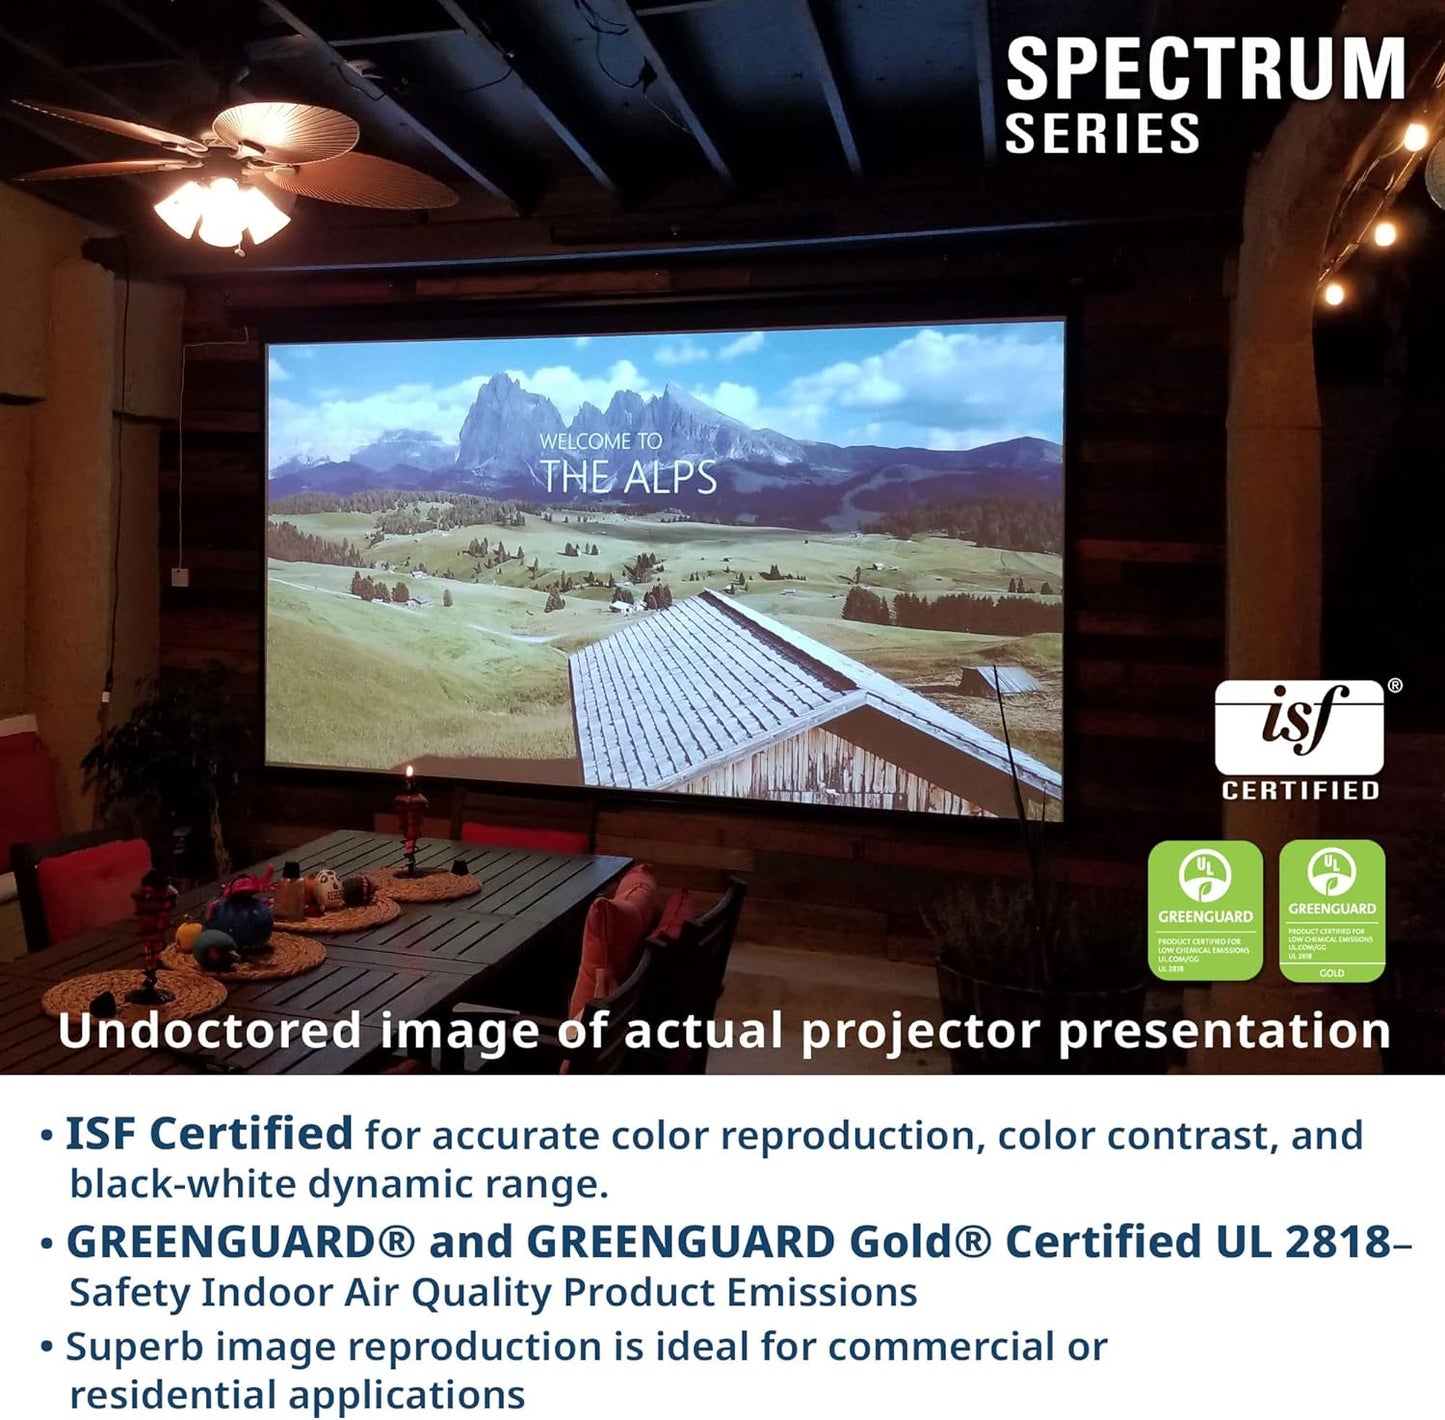 Elite Spectrum motorised screen isf certified